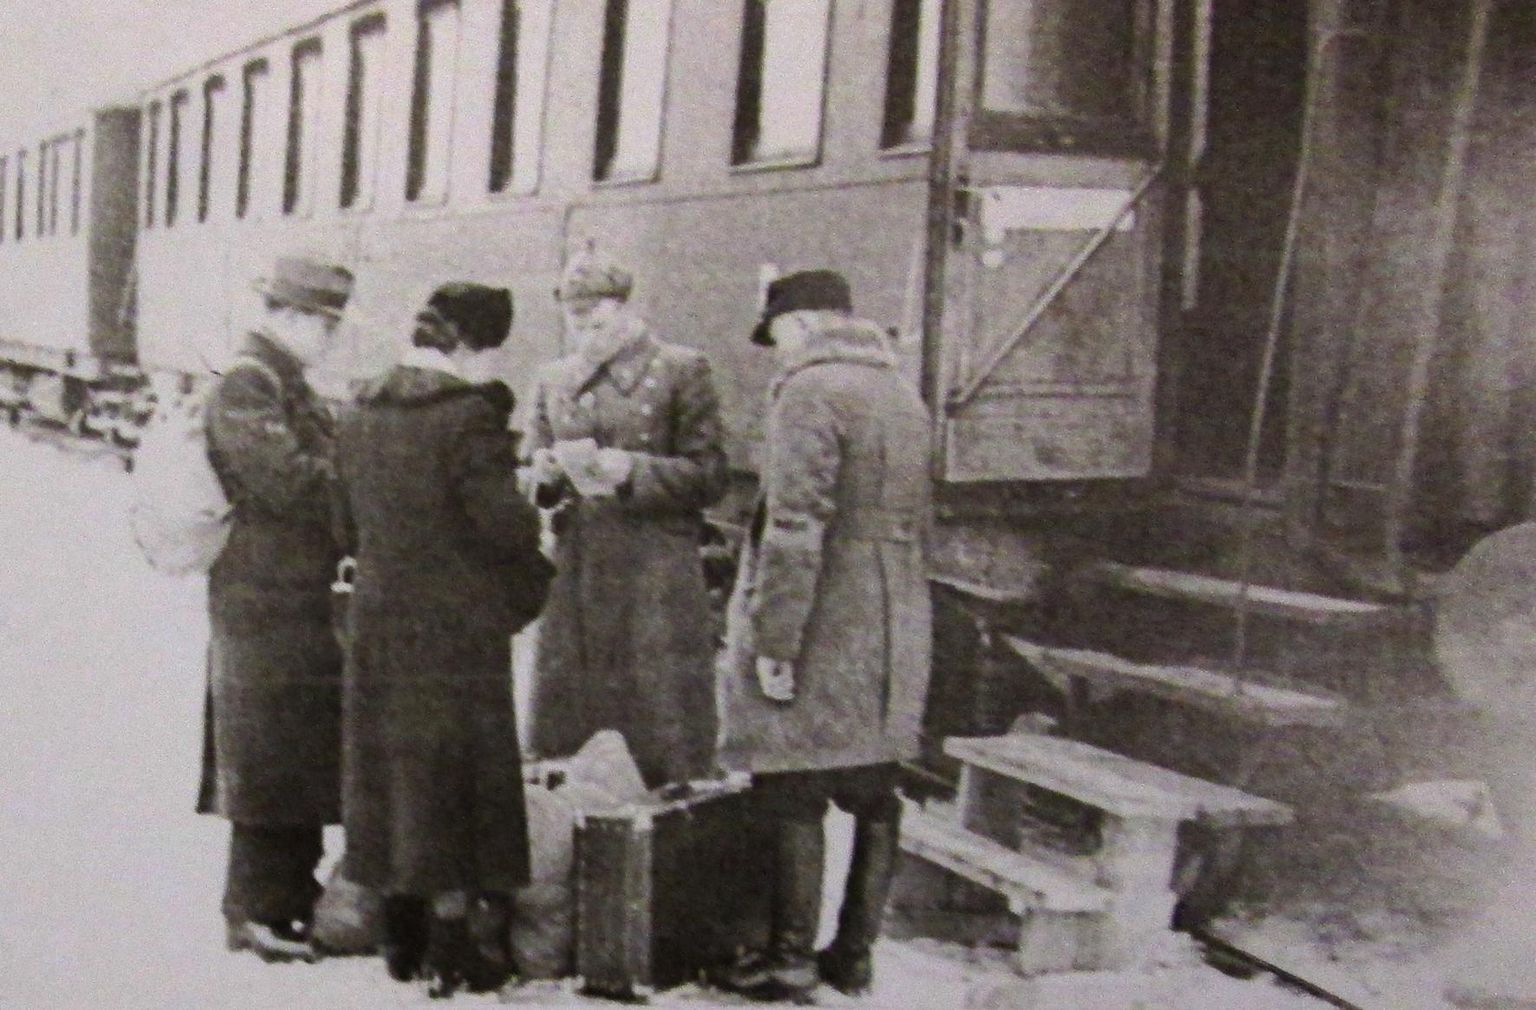 Foto dokumentide kontrollist 1941. aastal Tallinnas Balti jaamas on ainus teadaolev ülesvõte järelümberasumise kohta Eestis.